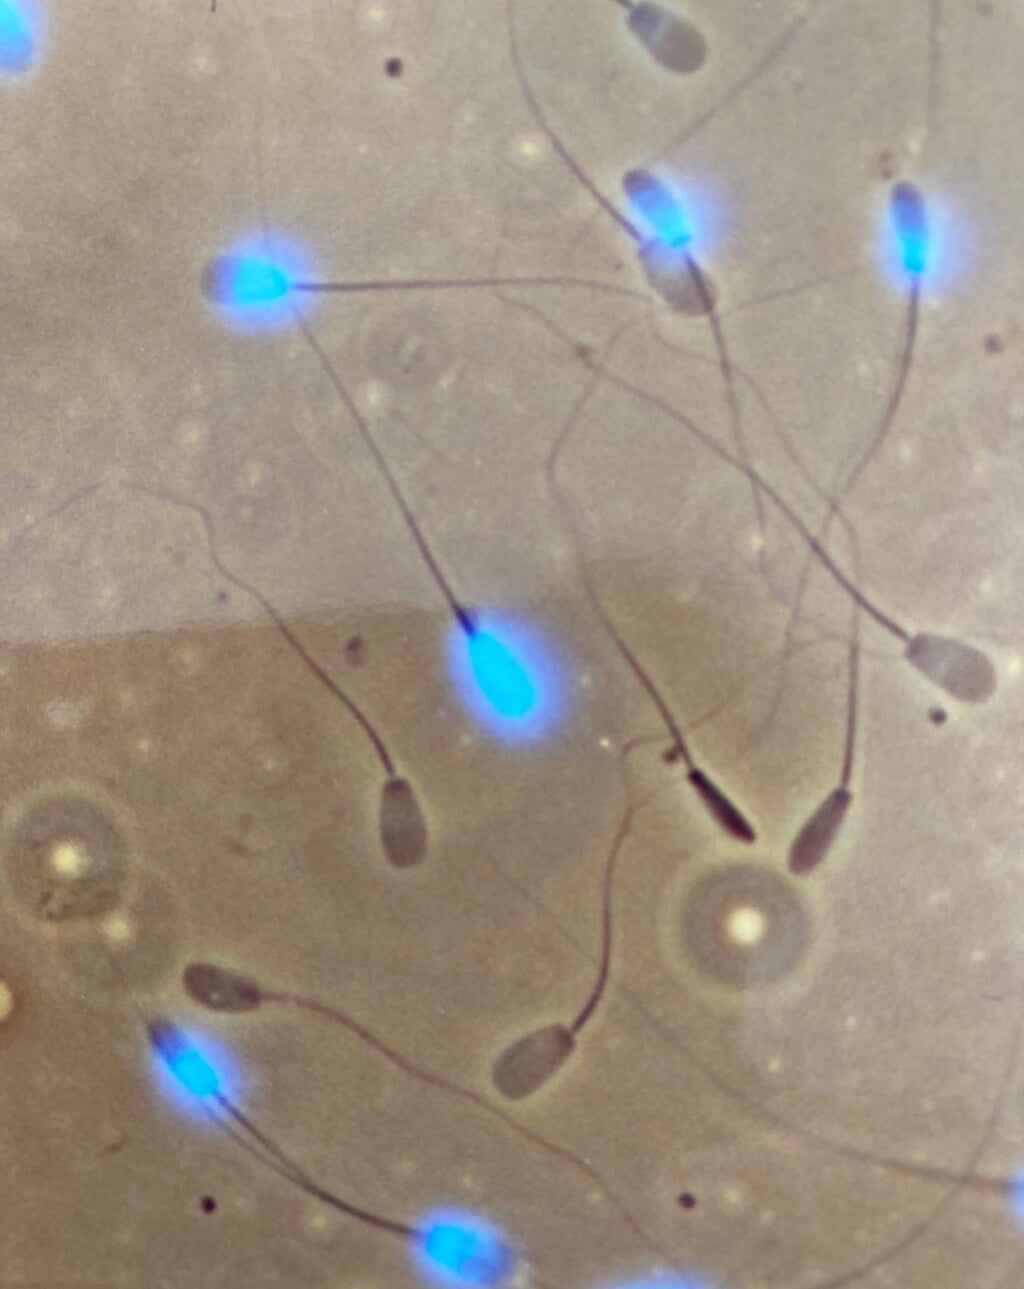 Een eicel rondom zaadcellen bij zoogdieren. (foto: Nanke den Daas)